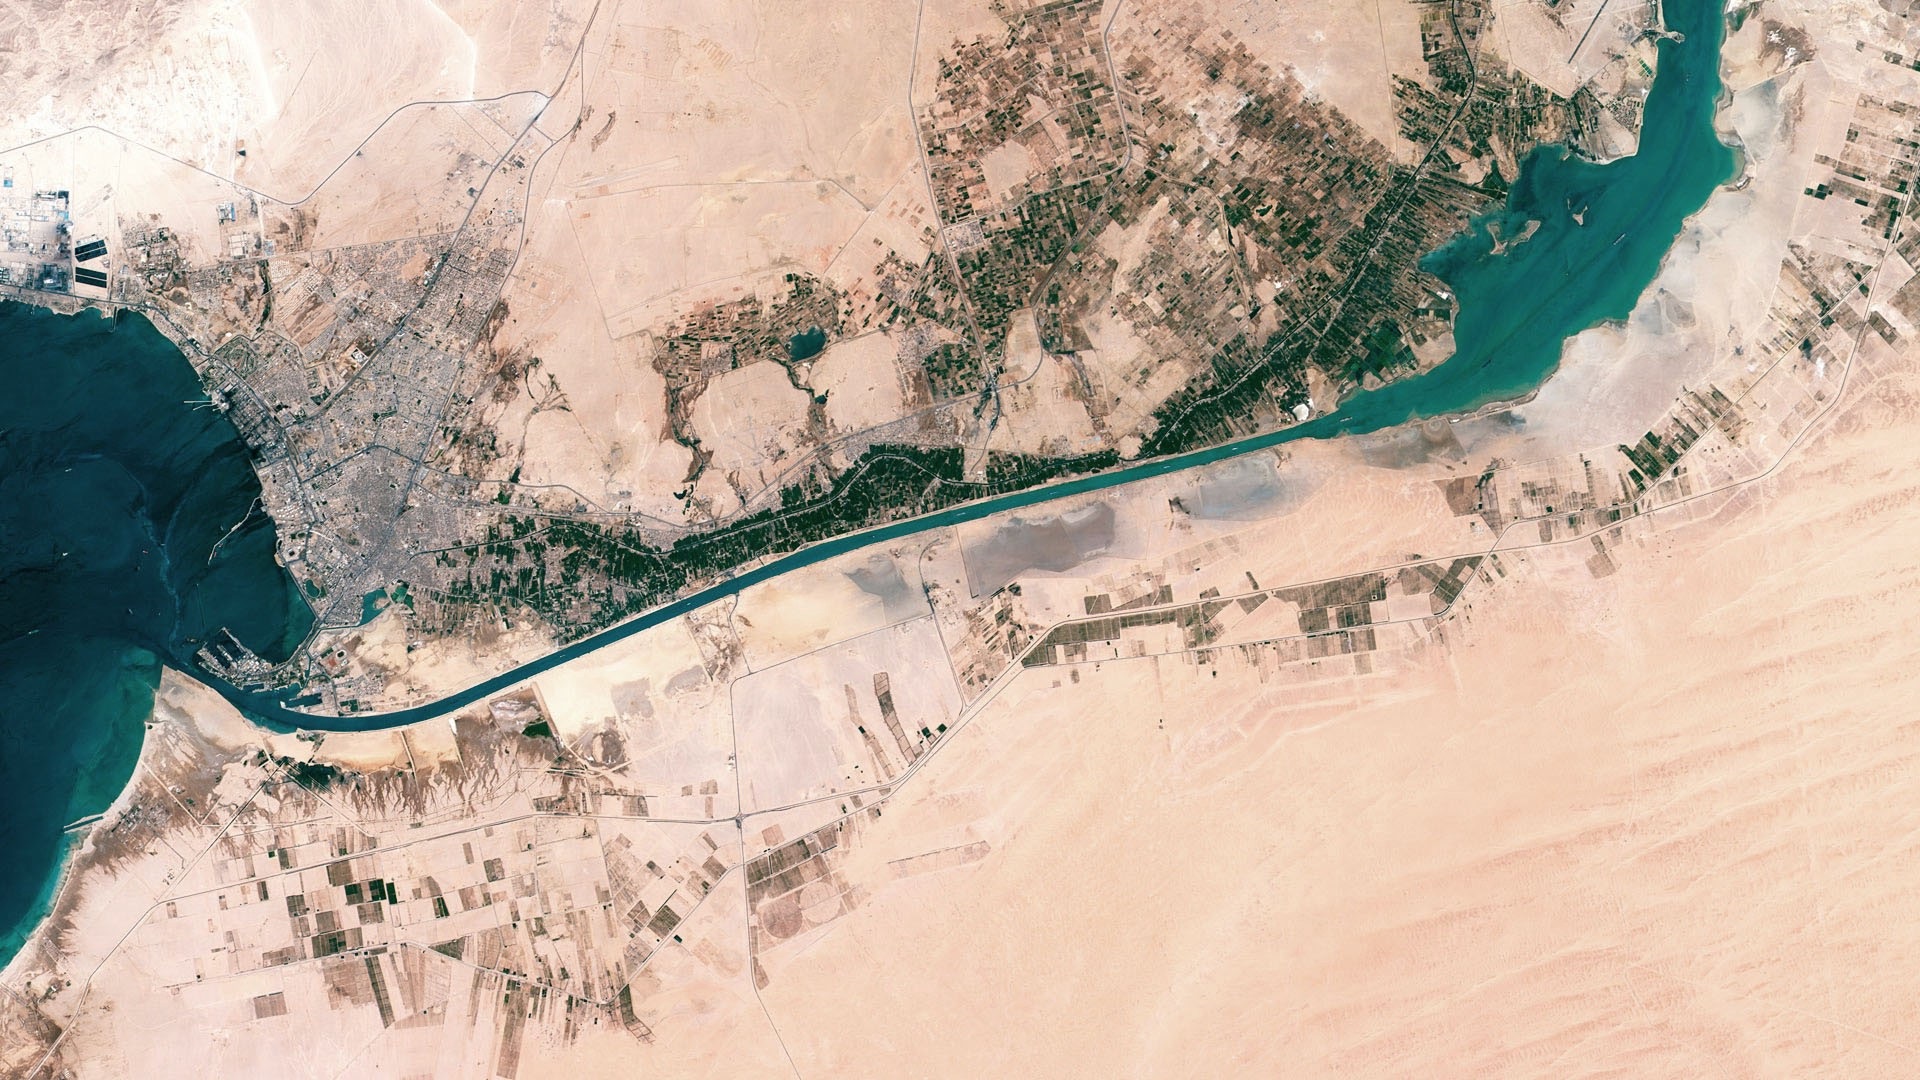 Vue aérienne de la partie sud du canal de Suez, depuis la ville de Suez et la mer Rouge (à gauche de l'image) jusqu'aux lacs Amers (en haut à droite). © Axelspace Corporation.